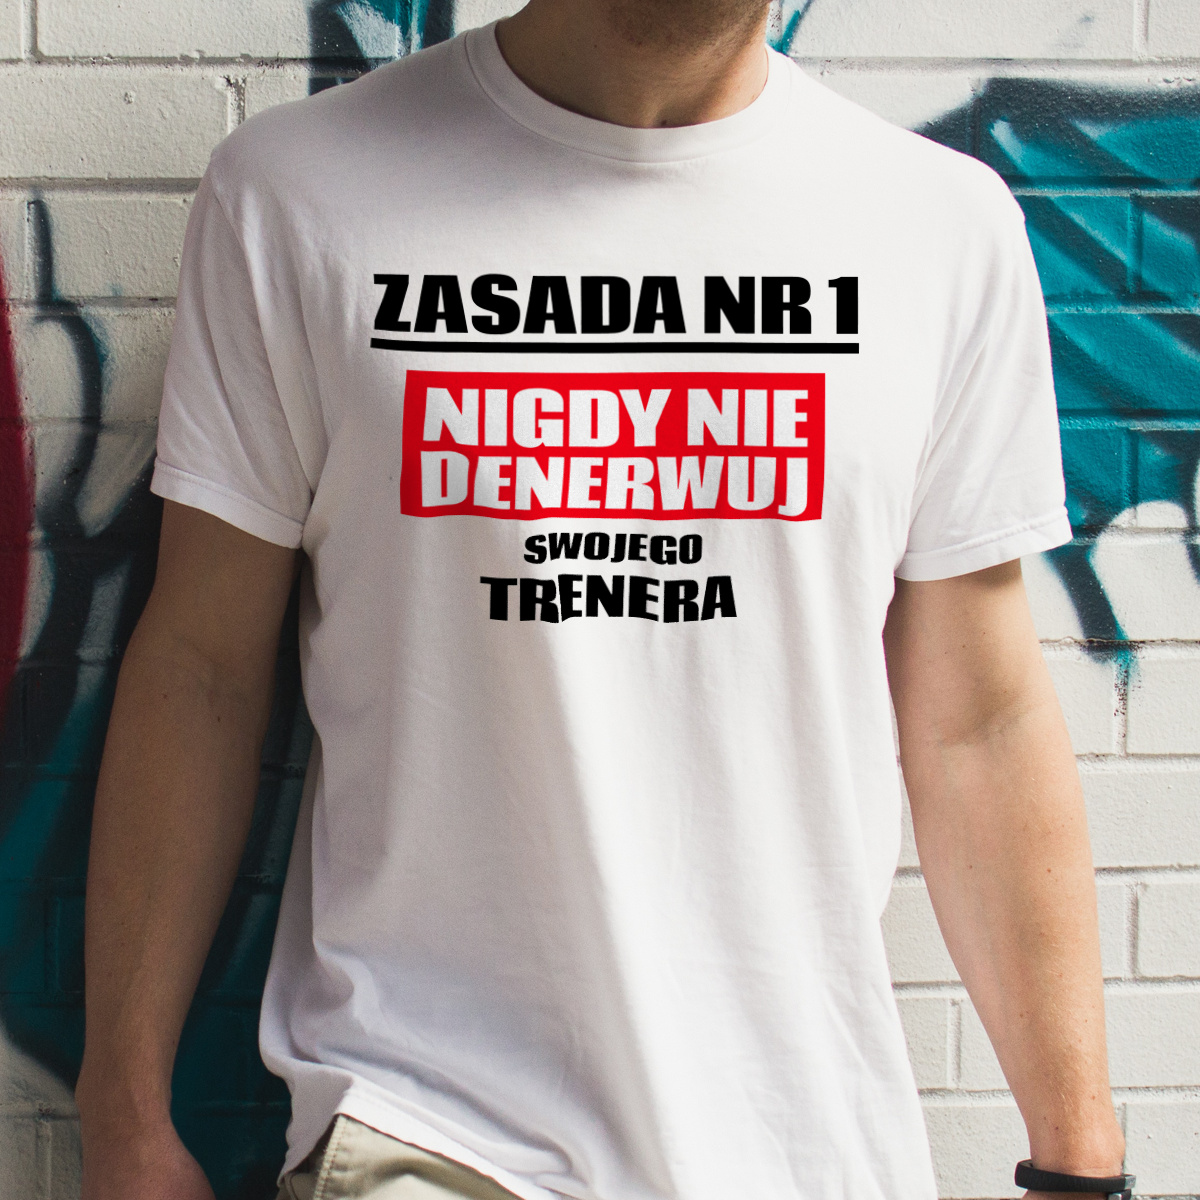 Zasada Nr 1 - Nigdy Nie Denerwuj Swojego Trenera - Męska Koszulka Biała